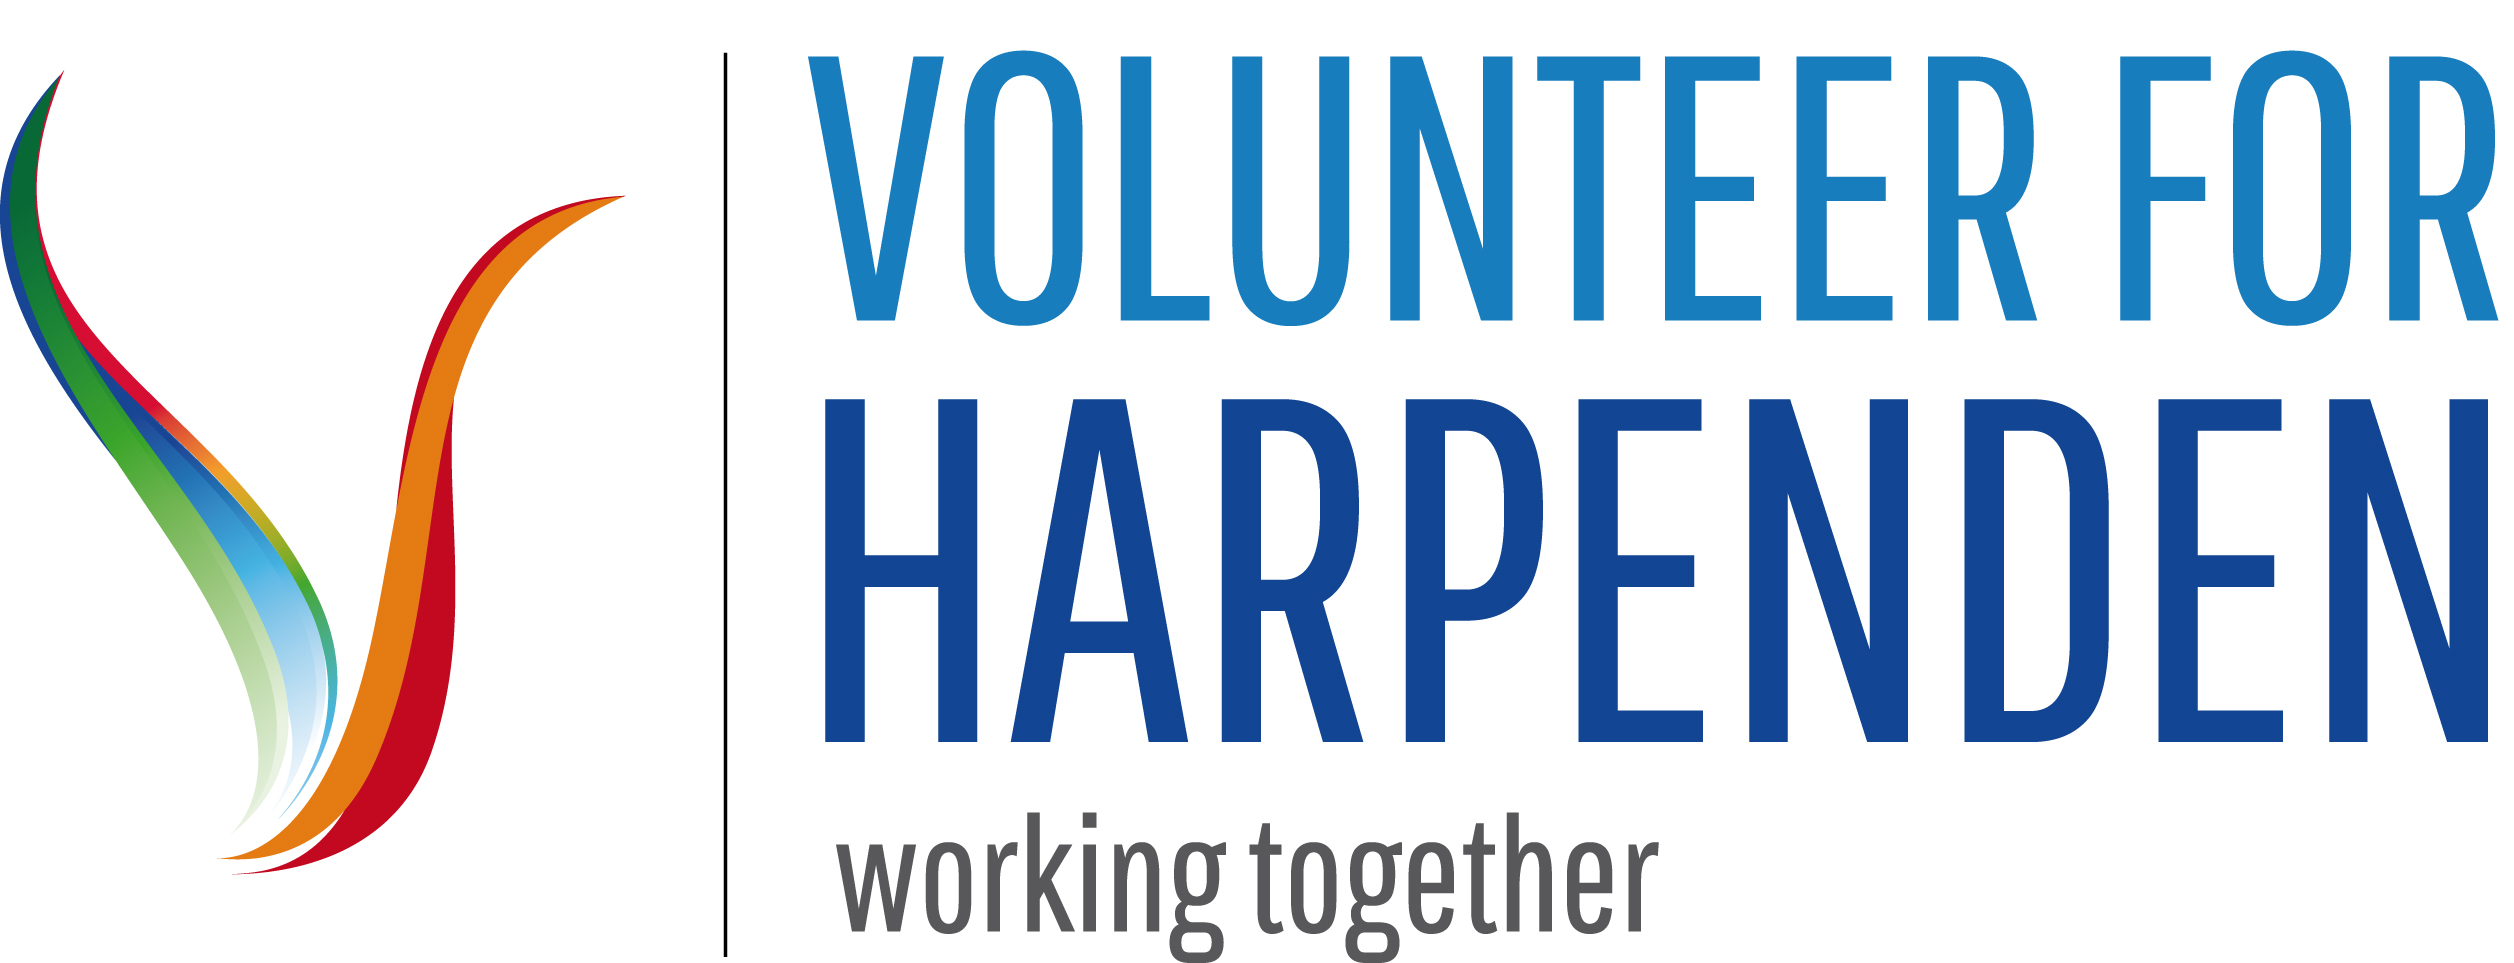 Volunteer For Hsrpenden logo